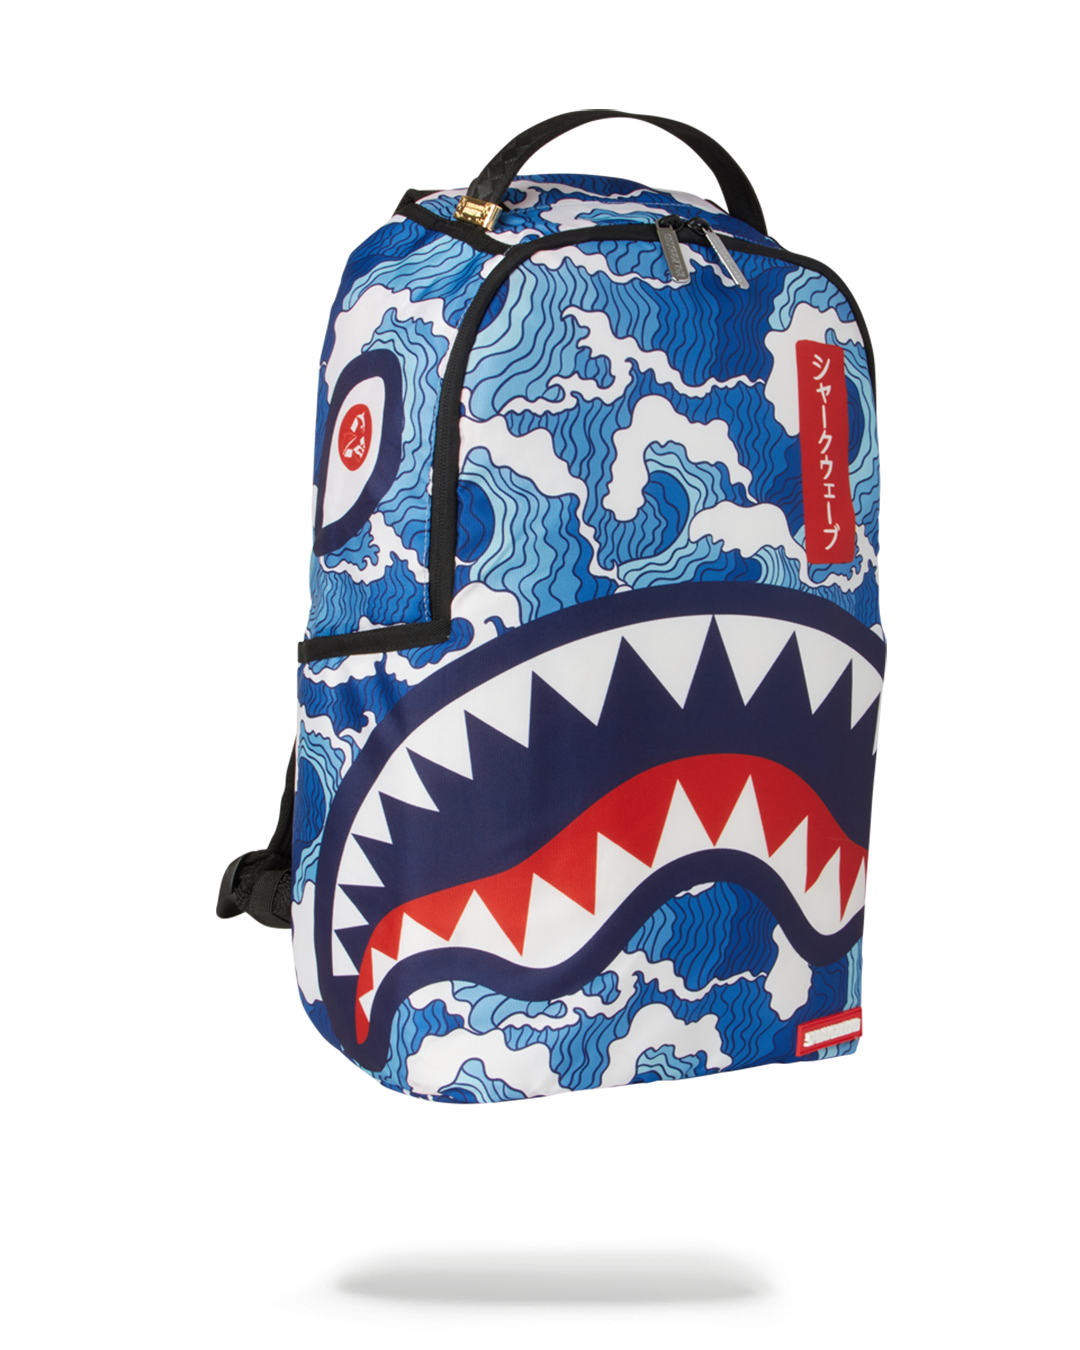 Sprayground - Shark Evere$t Backpack